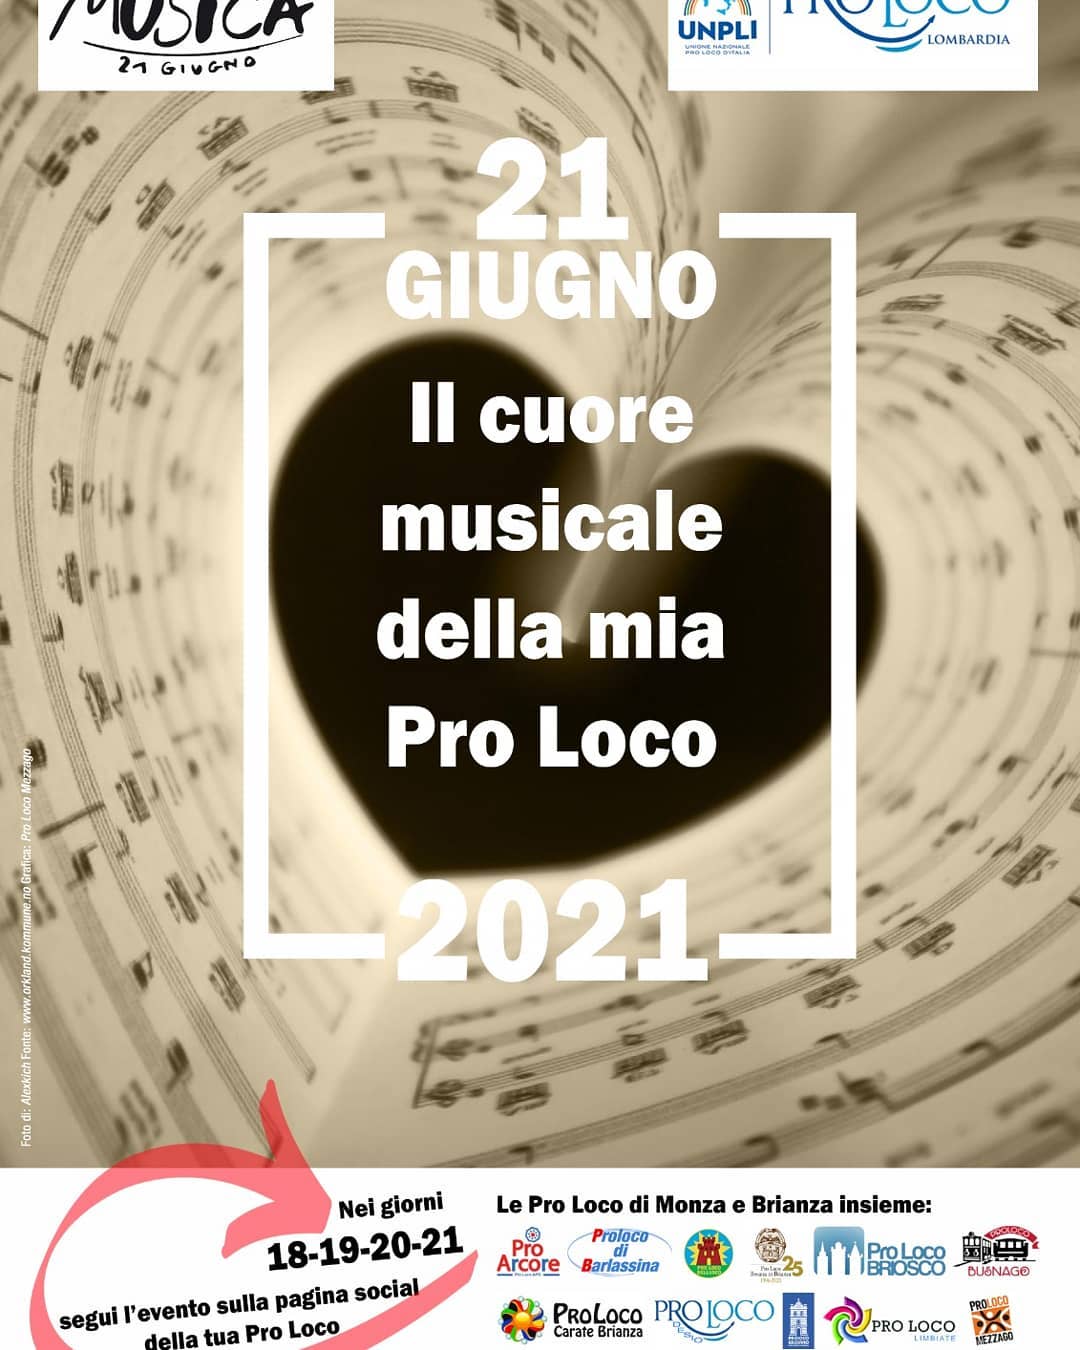 Festa della musica 2021!
Anche la Proloco di Carate Brianza parteciperà all'evento.
Nei giorni 18-19-20-21 seguite l'evento sulla nostra pagina Facebook.
#festadellamusica #musica #caratebrianza #proloco